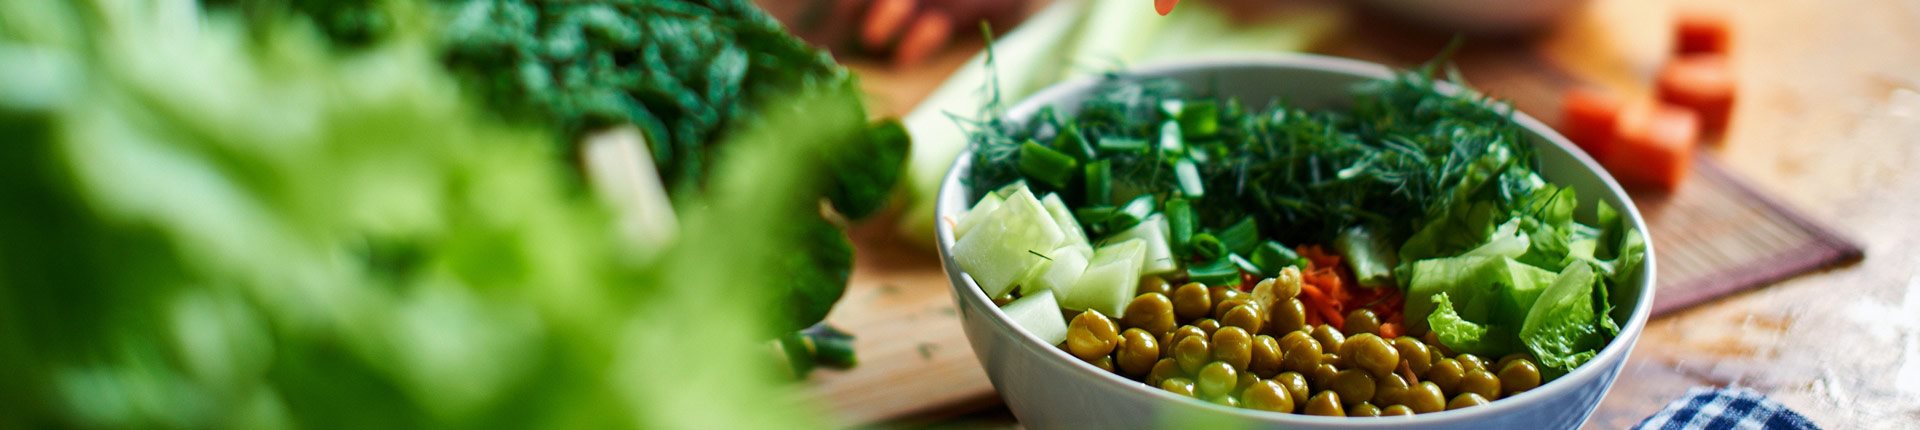 Zespół metaboliczny i choroby układu krążenia - czy dieta wegetariańska może pomóc?